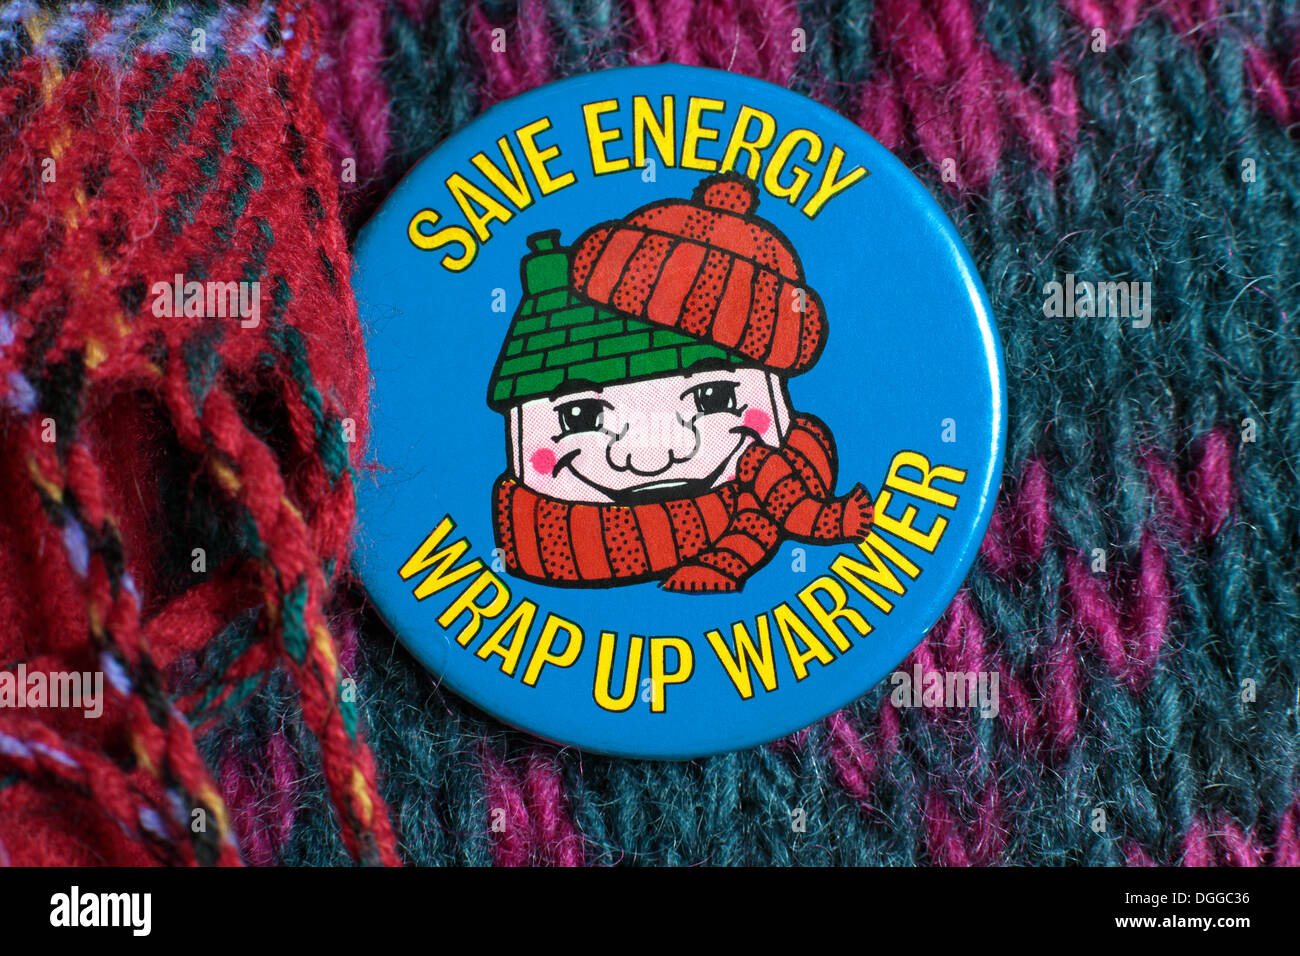 'Save Energie - Nachbearbeitung Wärmer" - eine Energieeinsparung Abzeichen von um 1980 durch eine britische Regierung, Abteilung oder einem verwandten Halbstaatliches. Stockfoto